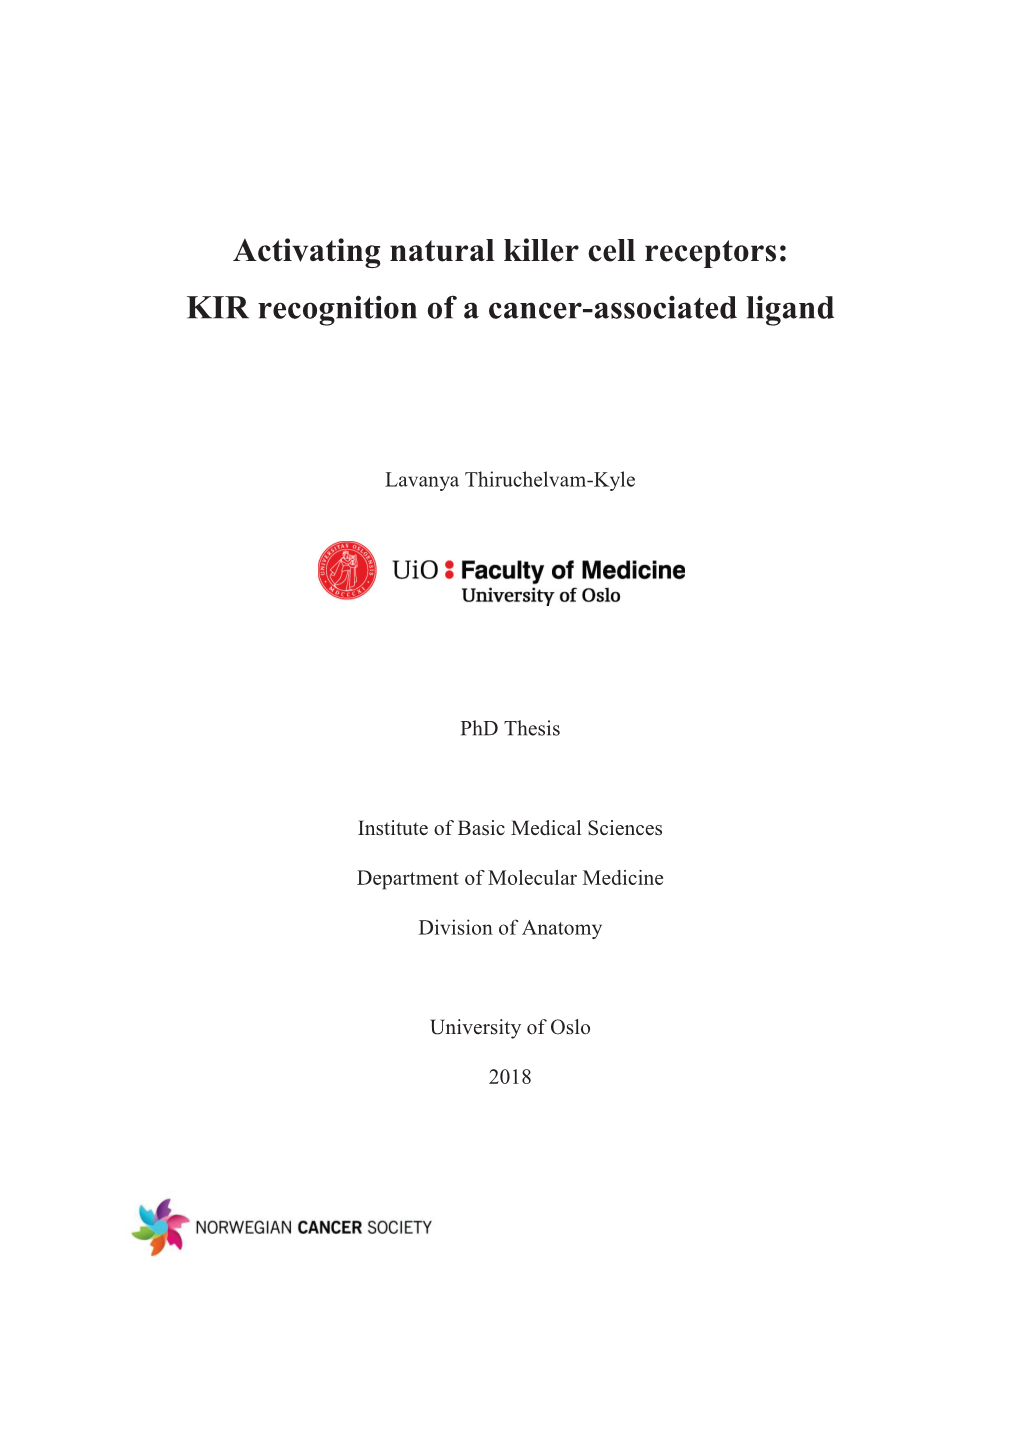 Activating Natural Killer Cell Receptors: KIR Recognition of a Cancer-Associated Ligand